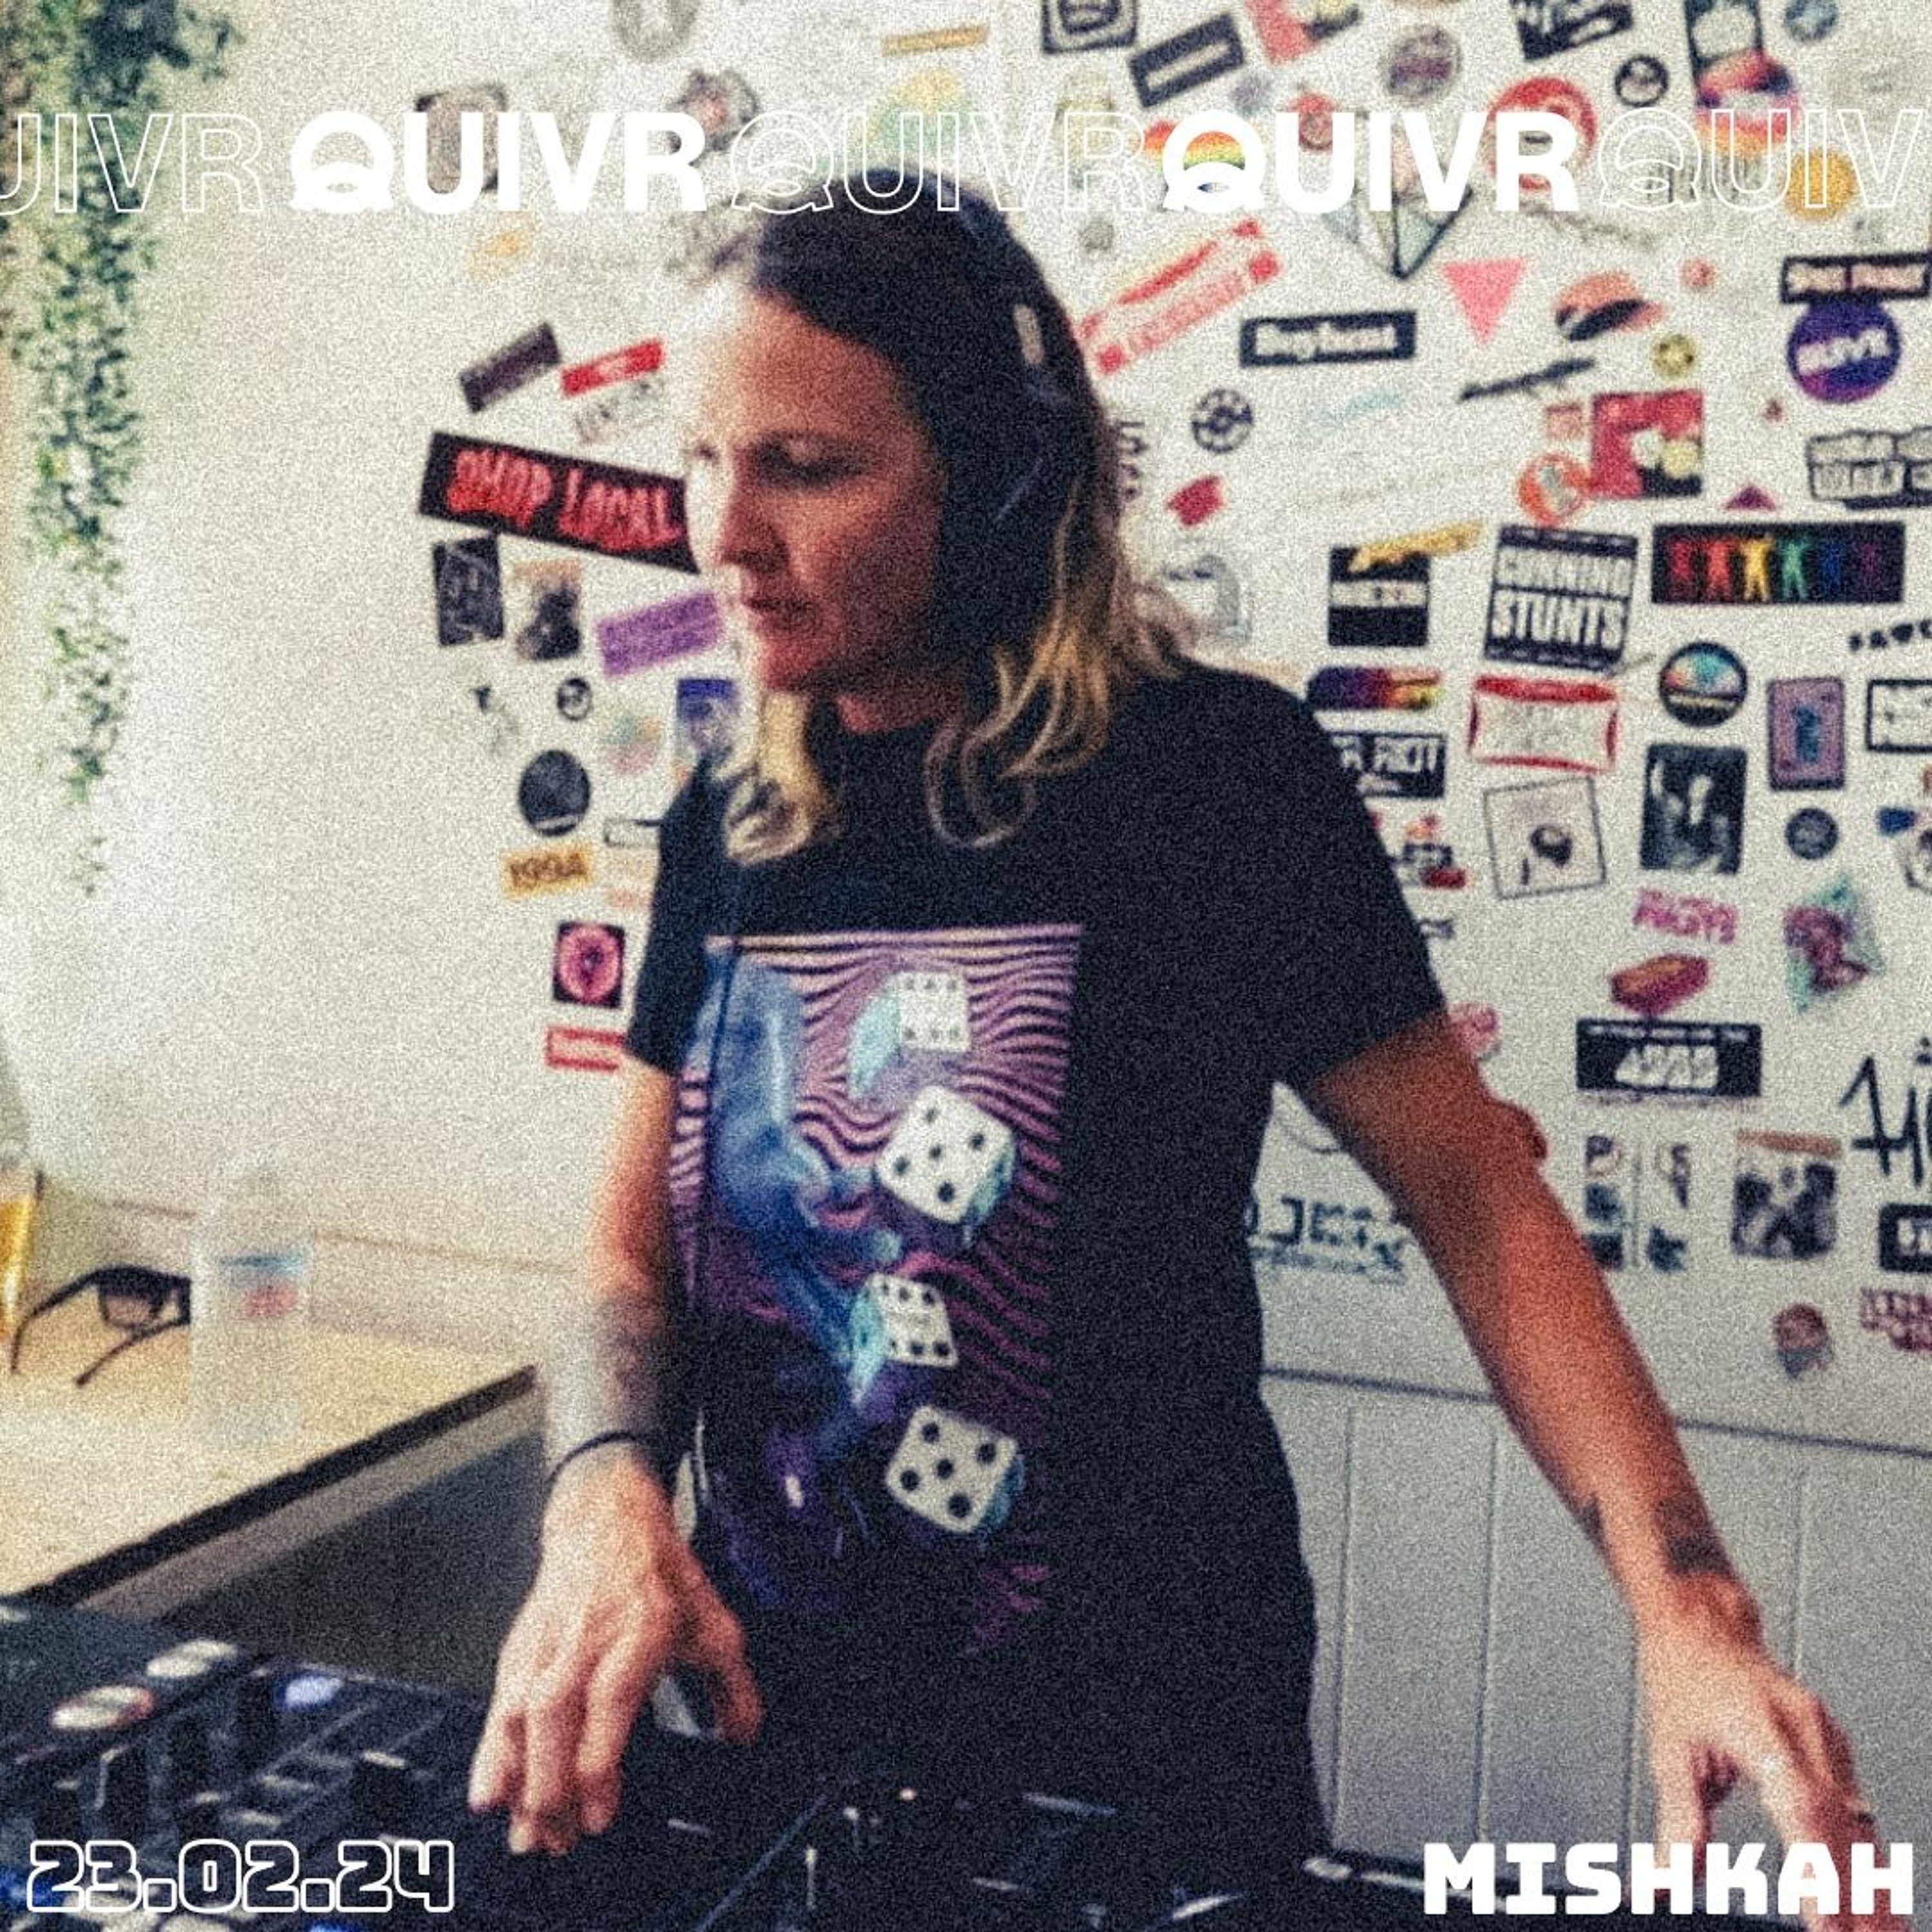 Mishkah | QUIVR | 23-02-24